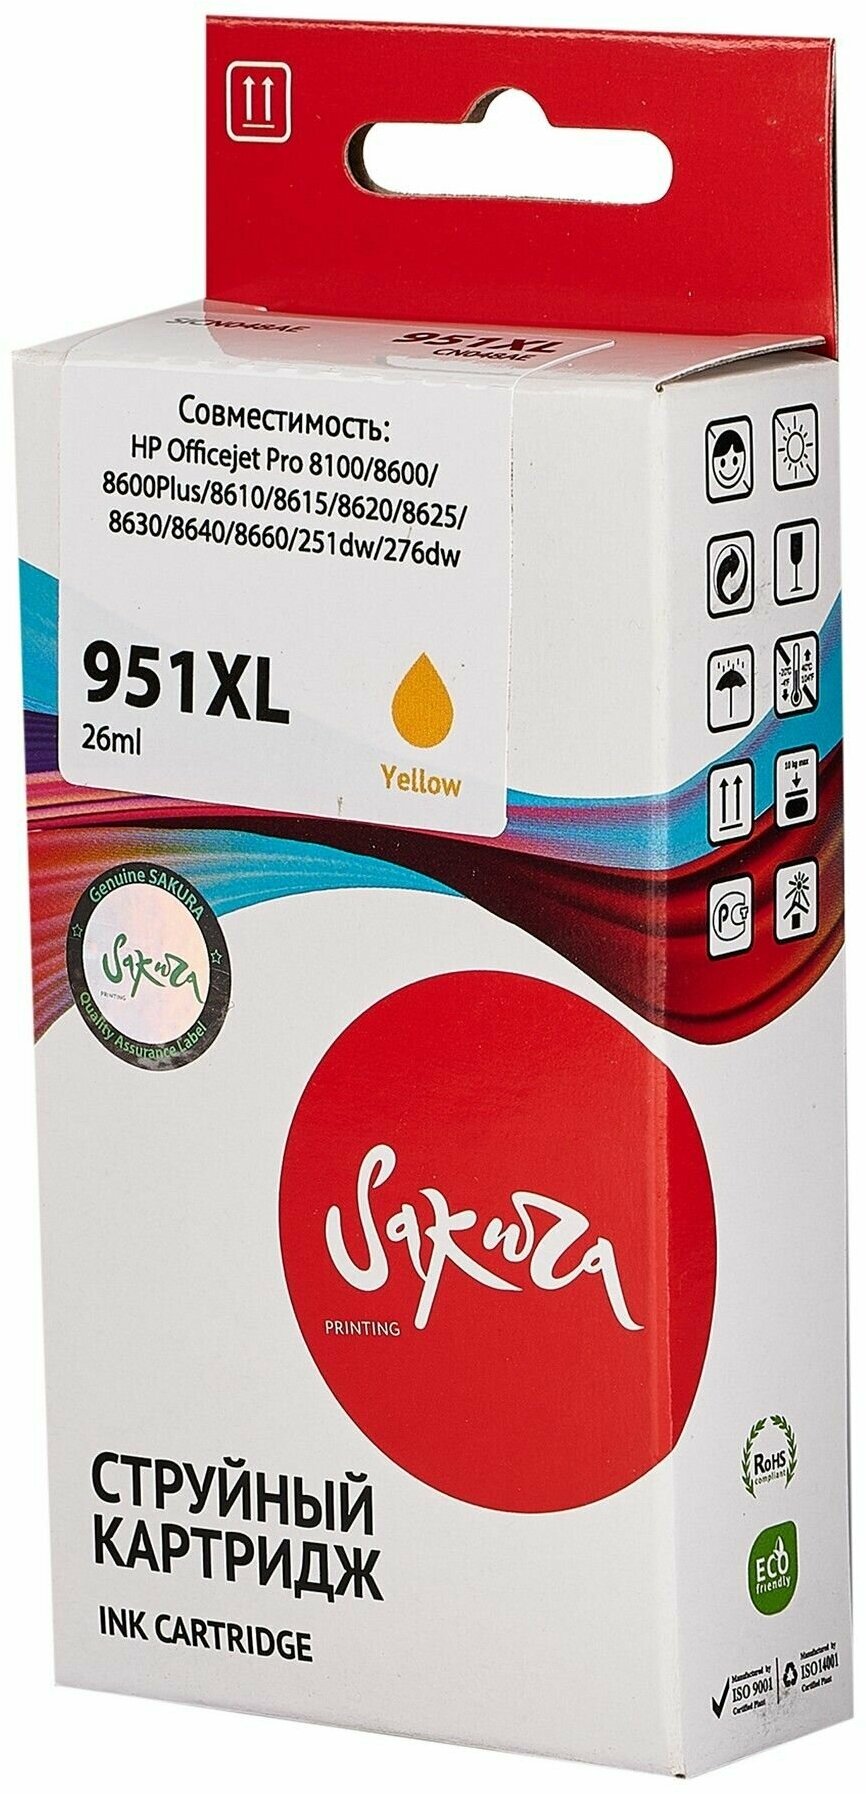 Картридж струйный Sakura 951XL / CN048AE Увеличенной емкости, желтый, пигментный тип, 26 мл, 1500 стр. для HP (SICN048AE)